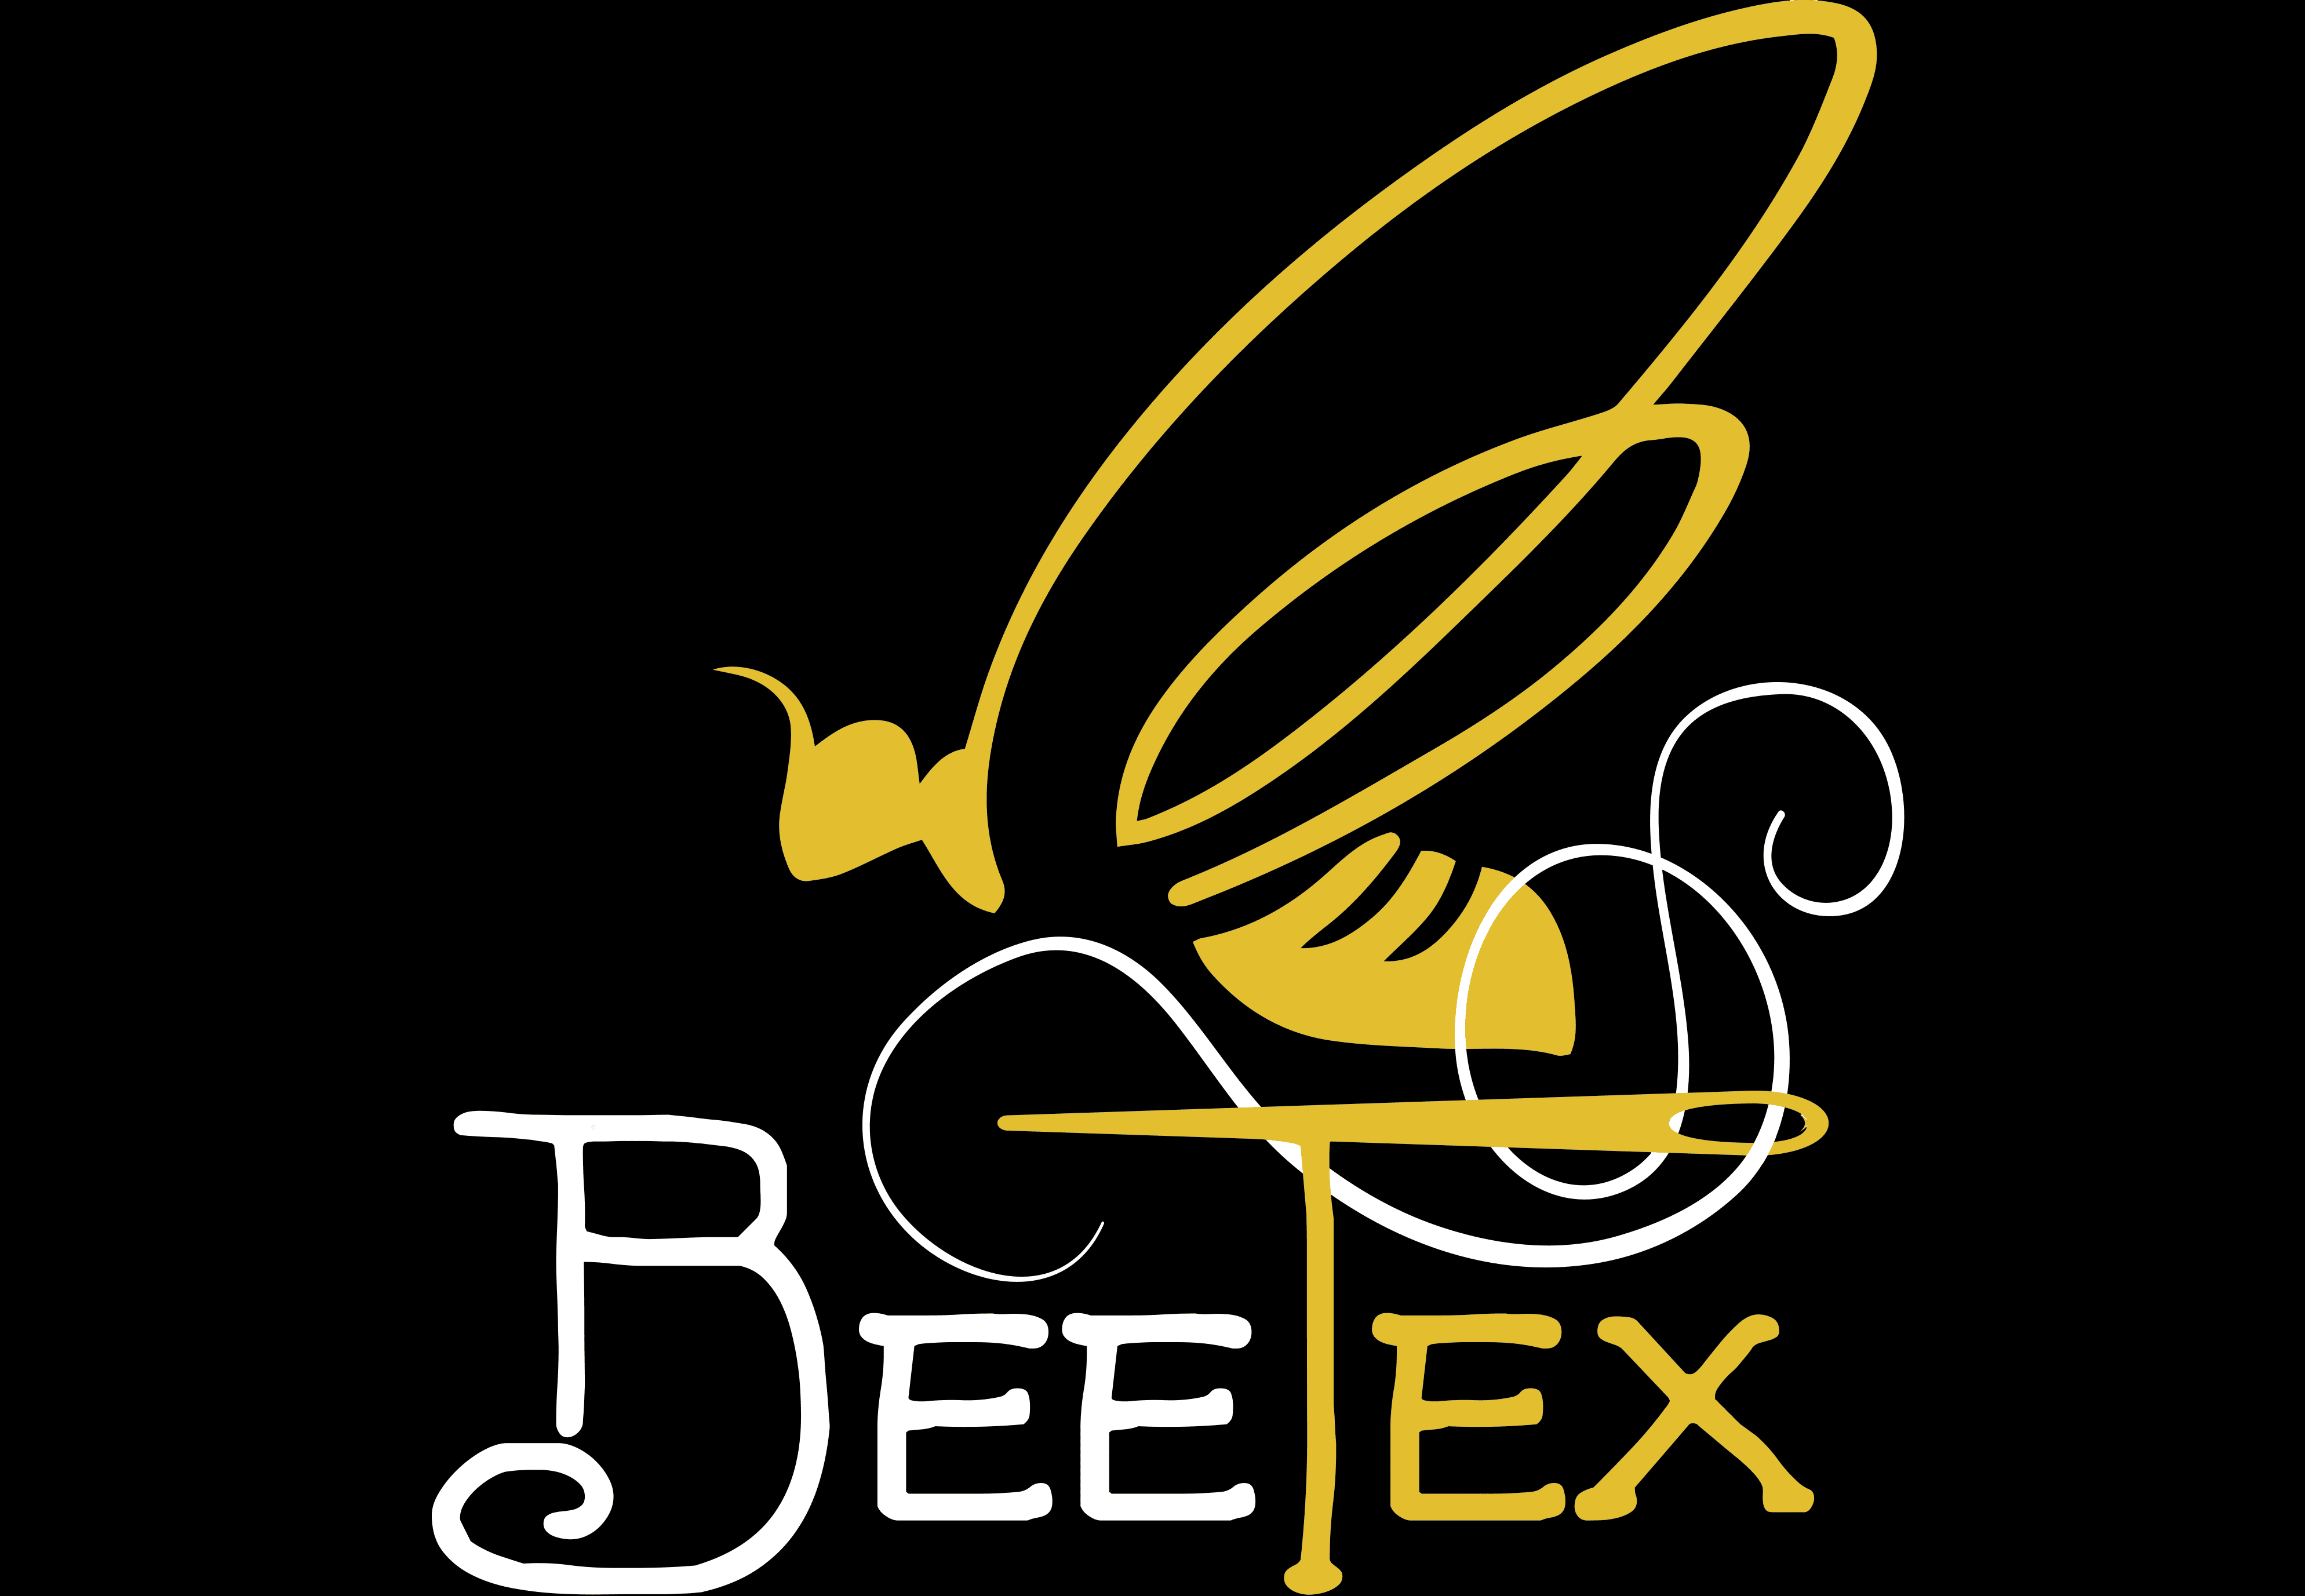  BeeTex